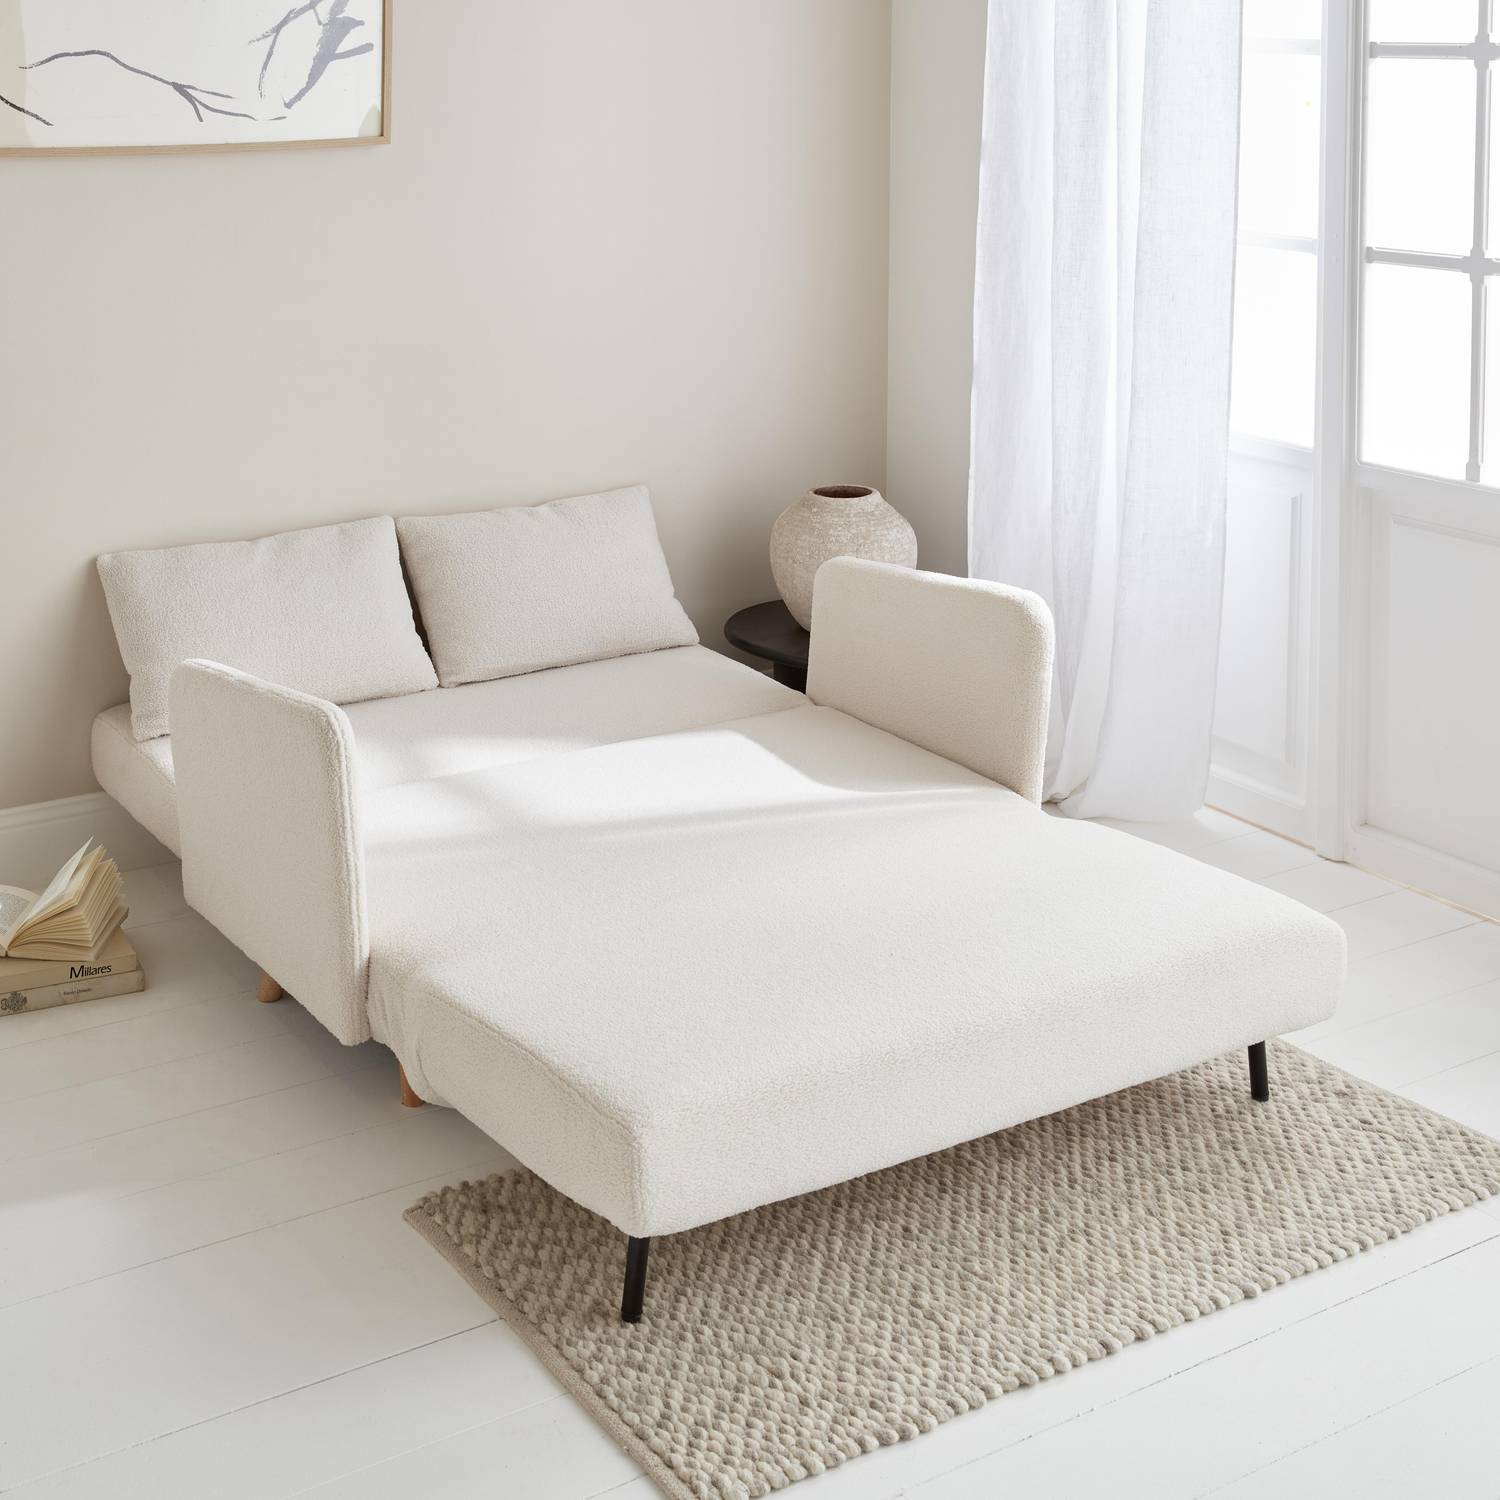 sofá-cama escandinavo de 2 lugares - pernas em madeira, encosto reclinável - PANAM Photo2